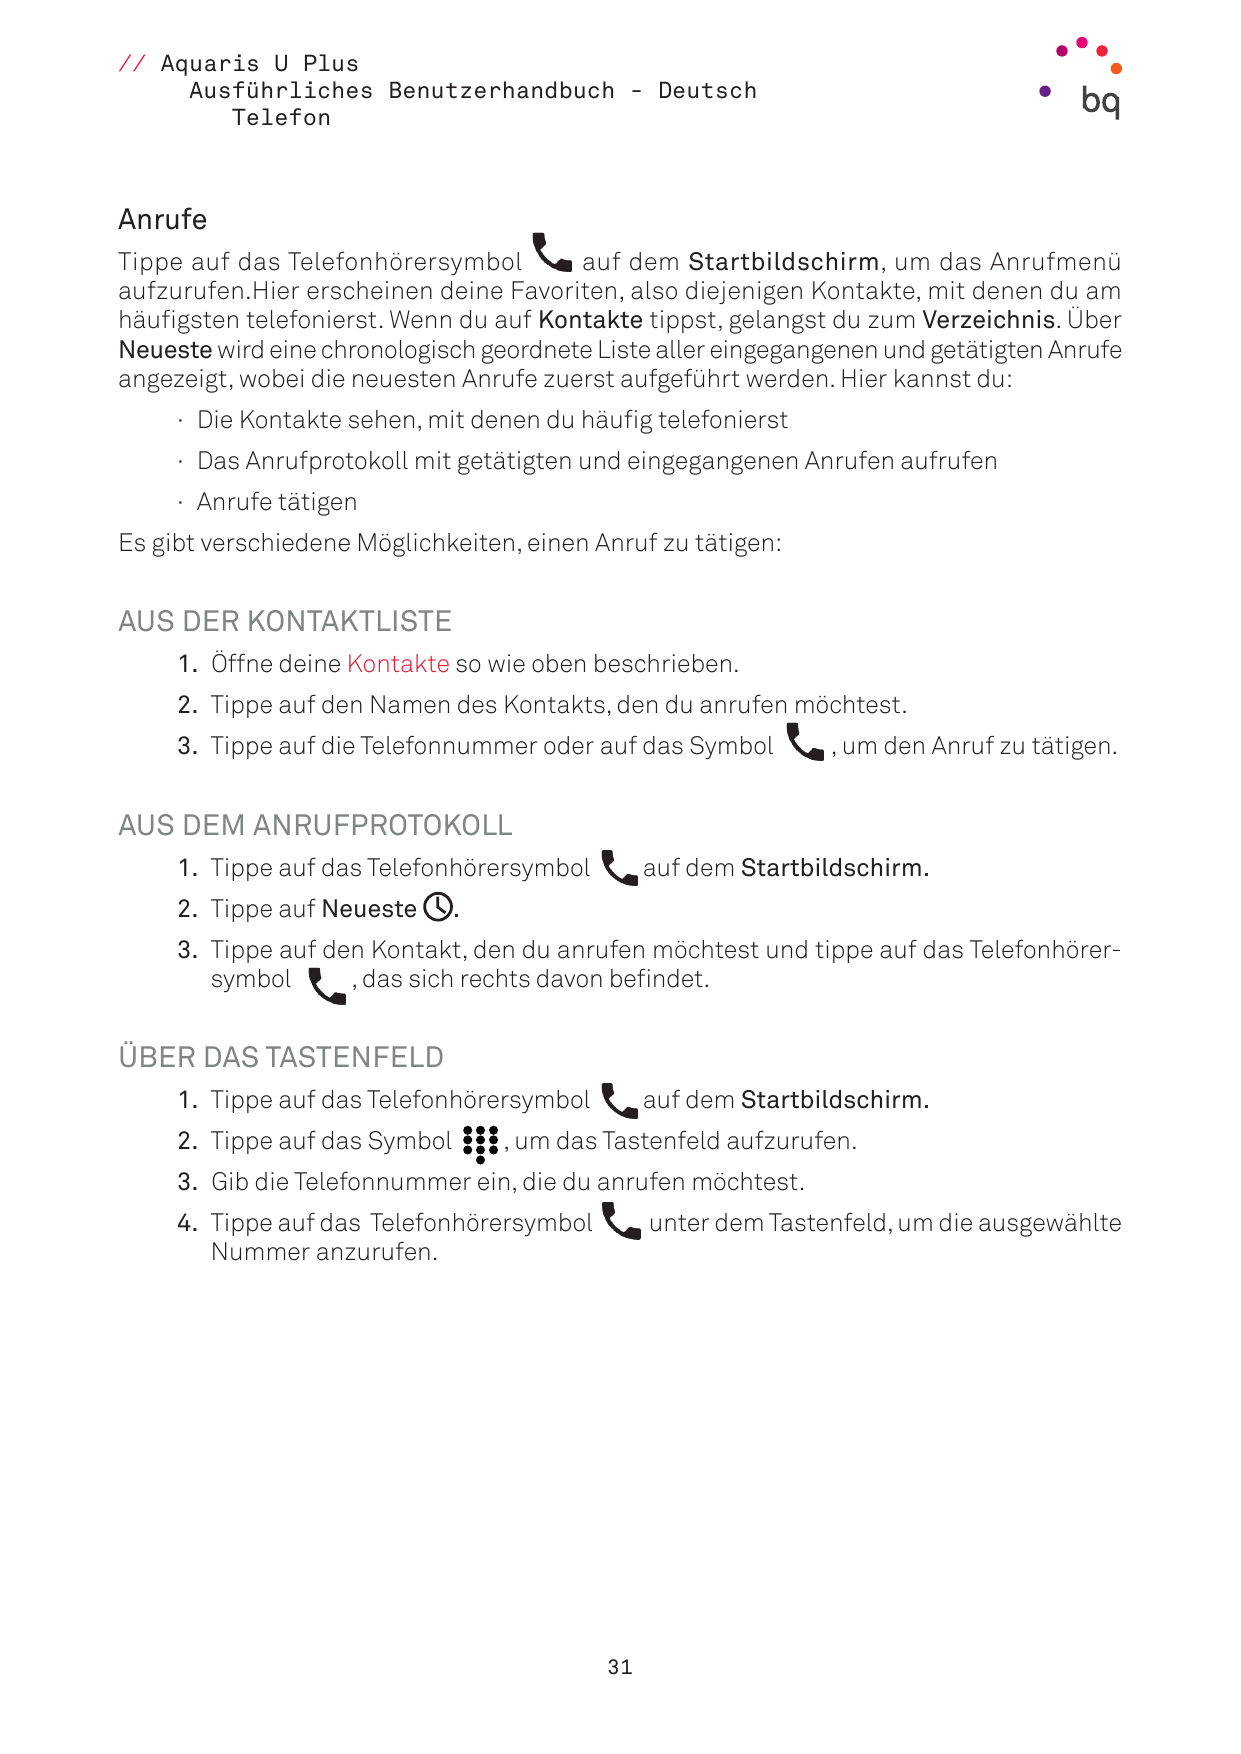 // Aquaris U PlusAusführliches Benutzerhandbuch - DeutschTelefonAnrufeTippe auf das Telefonhörersymbolauf dem Startbildschirm, u